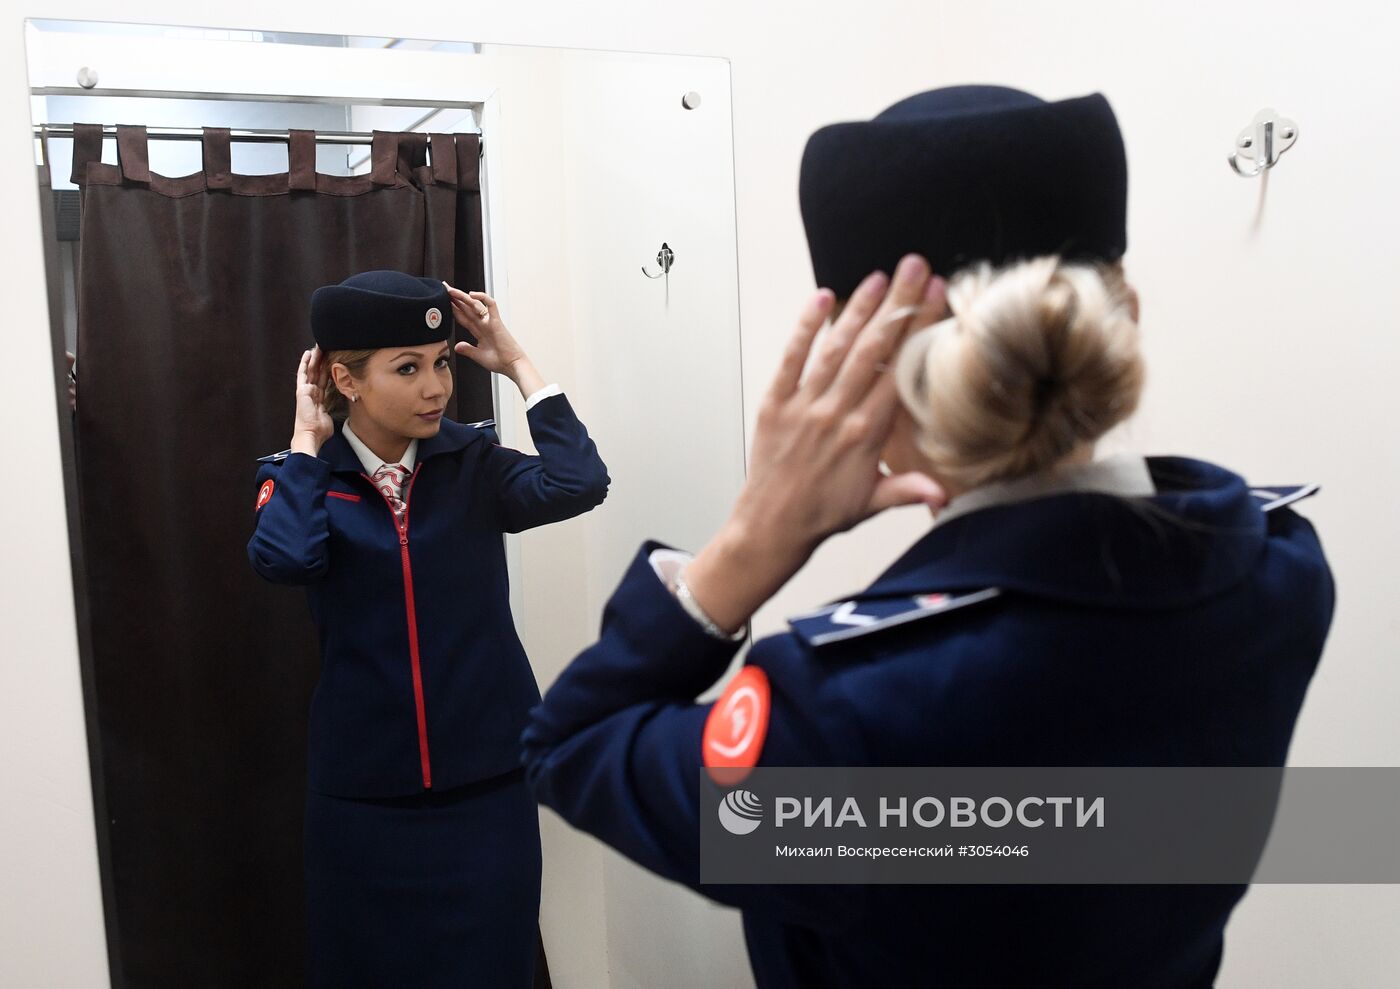 Открытие склада форменной одежды сотрудников Московского метрополитена